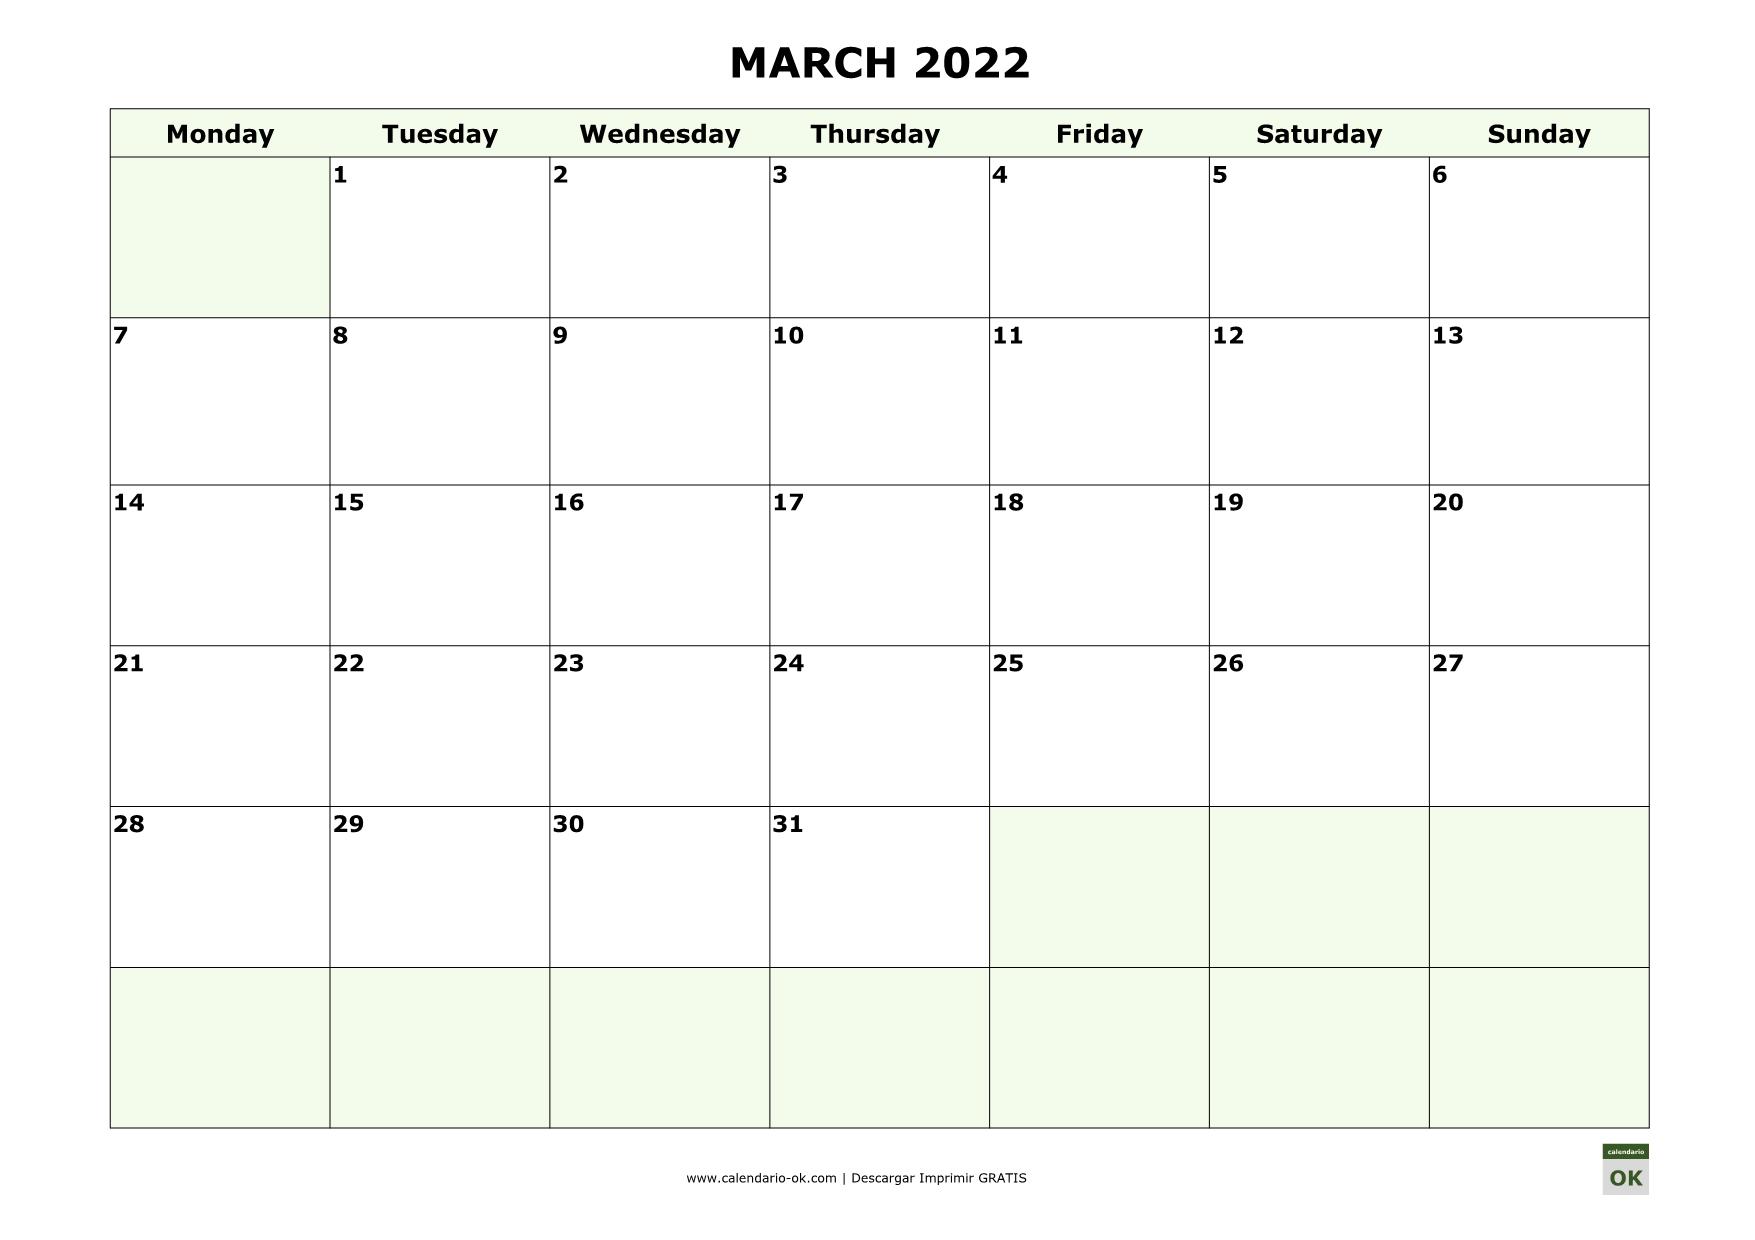 MARZO 2022 calendario en INGLES